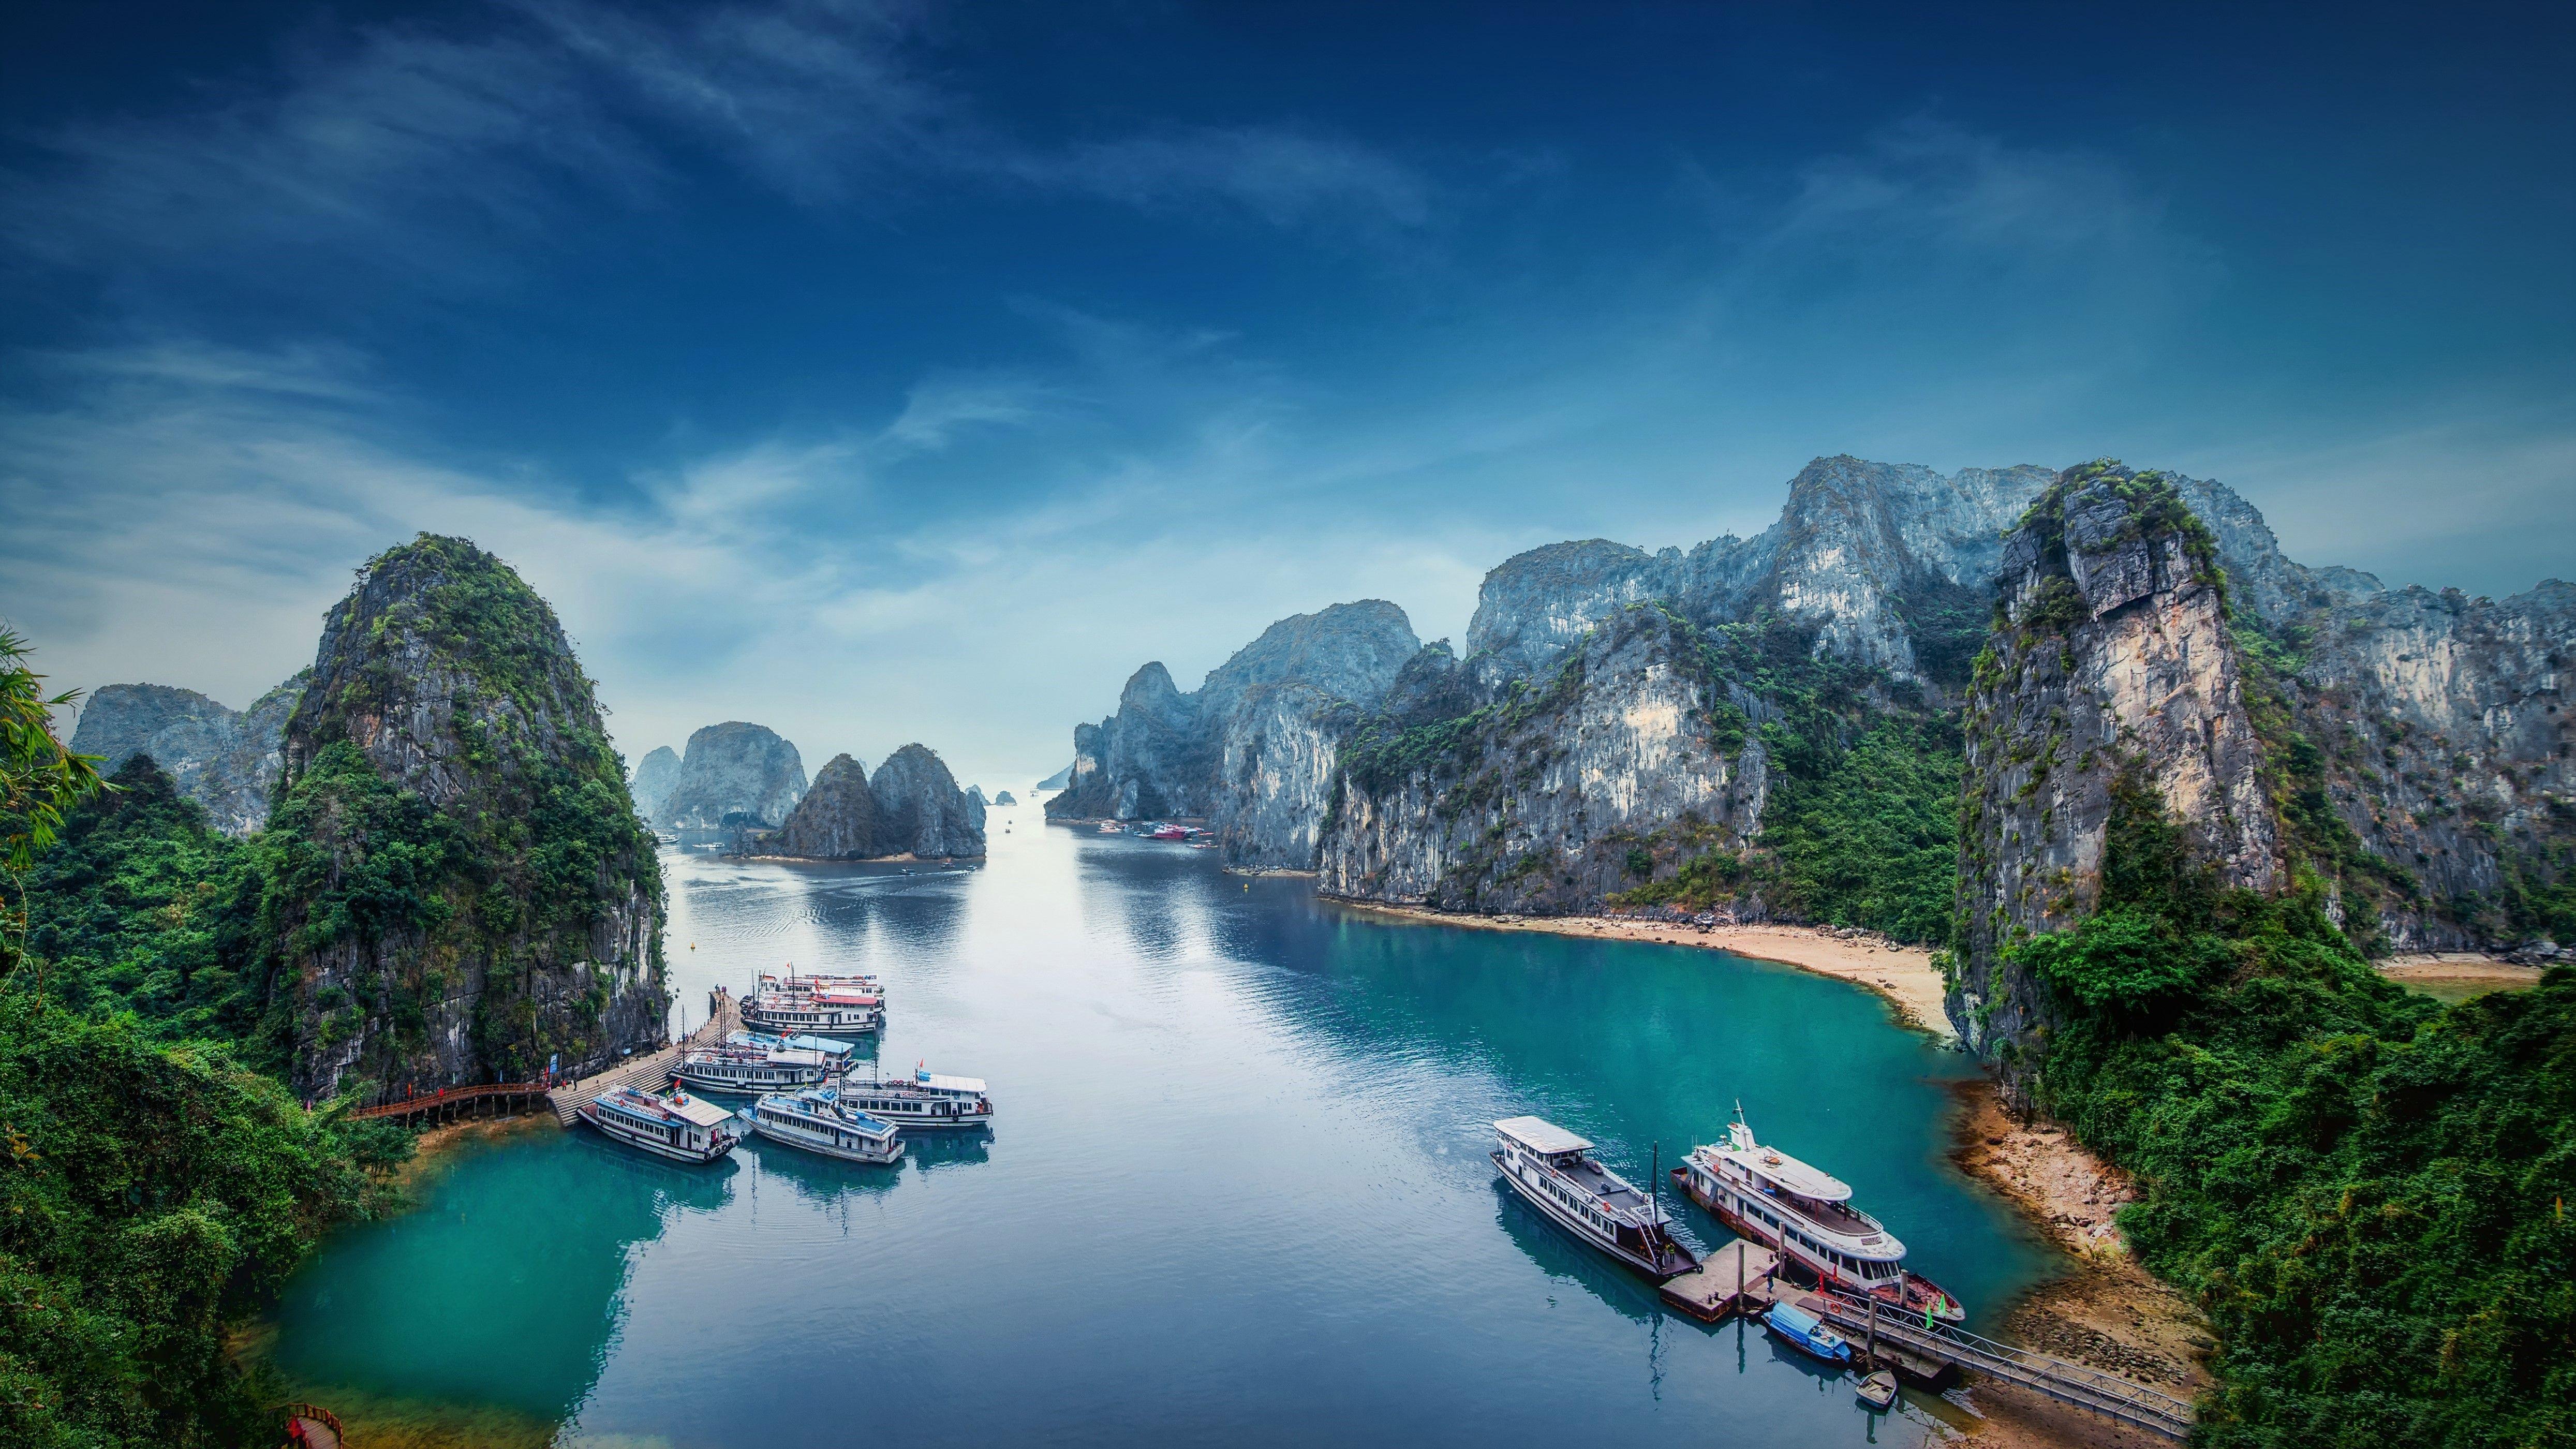 Hãy cùng chiêm ngưỡng những bức ảnh đẹp Việt Nam tuyệt vời nhất. Bạn sẽ được thư giãn trong khung cảnh thiên nhiên tuyệt đẹp và khám phá những địa điểm mới lạ. Chắc chắn bạn sẽ cảm thấy thích thú và tự hào vì Việt Nam những ngày này vẫn còn giữ được những vẻ đẹp tuyệt vời như thế này.